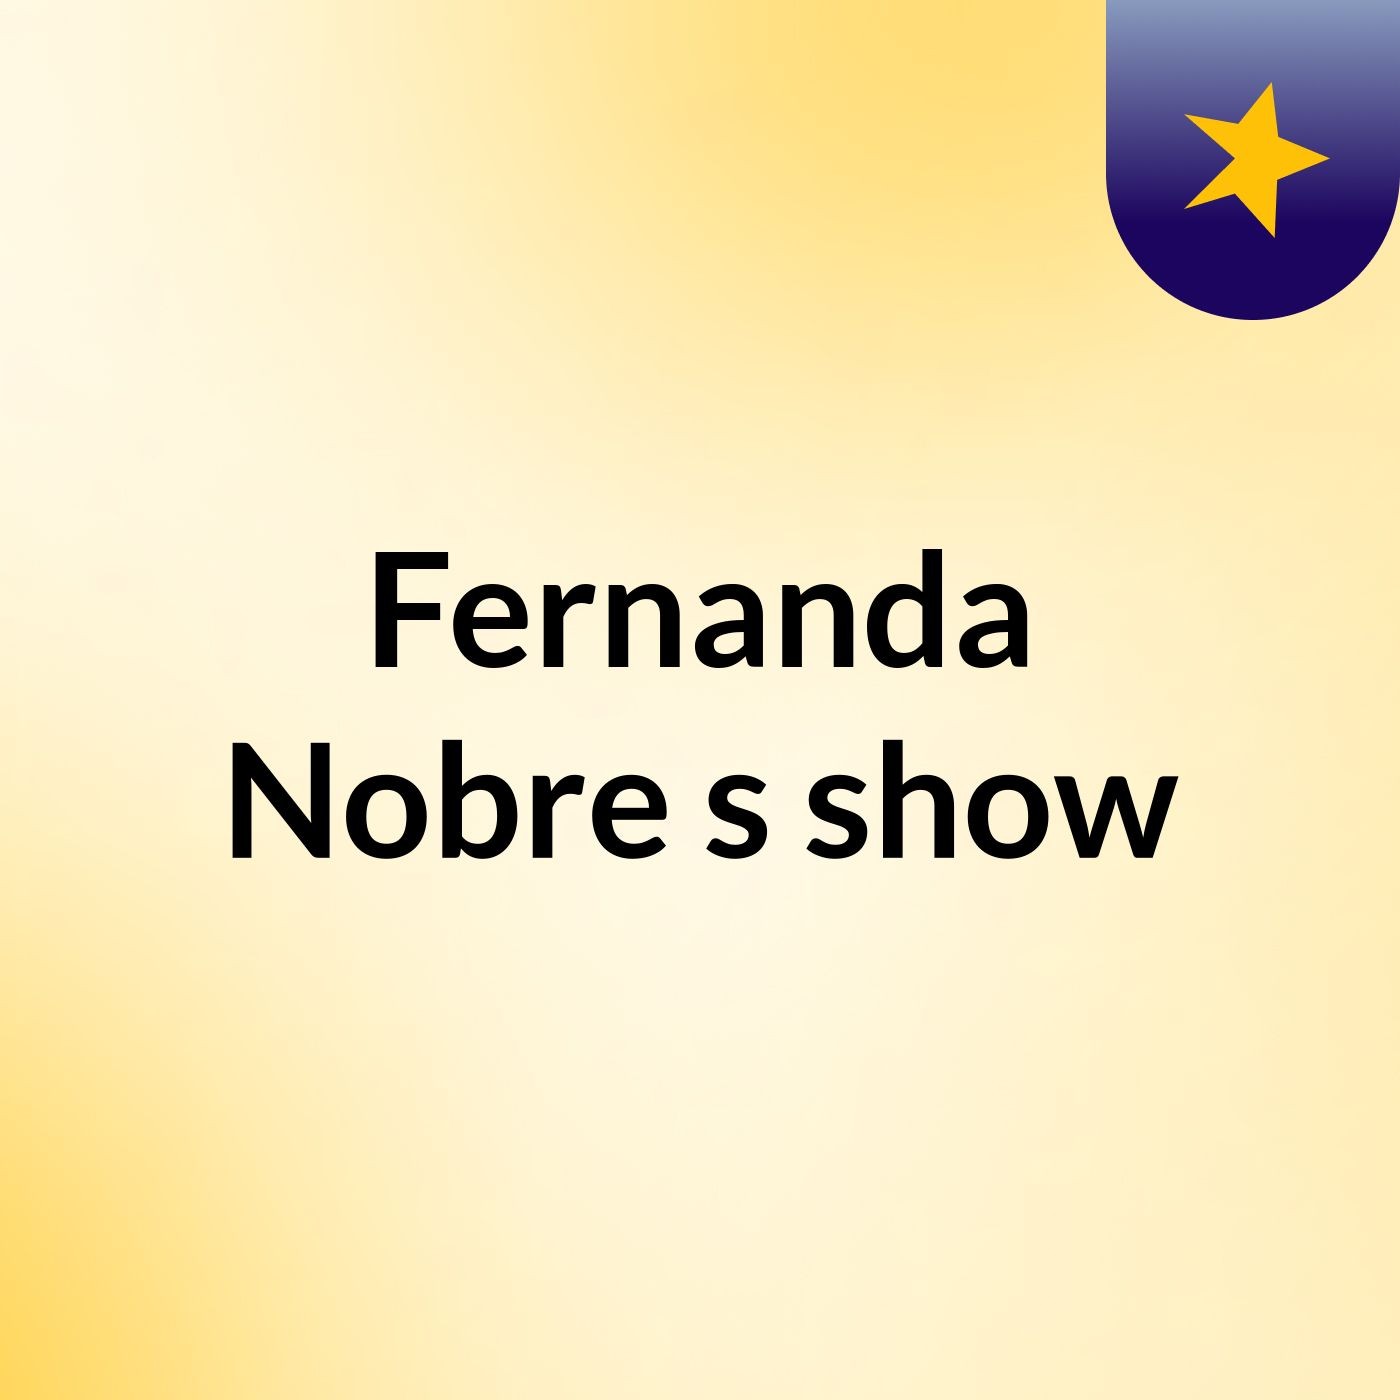 Fernanda Nobre's show